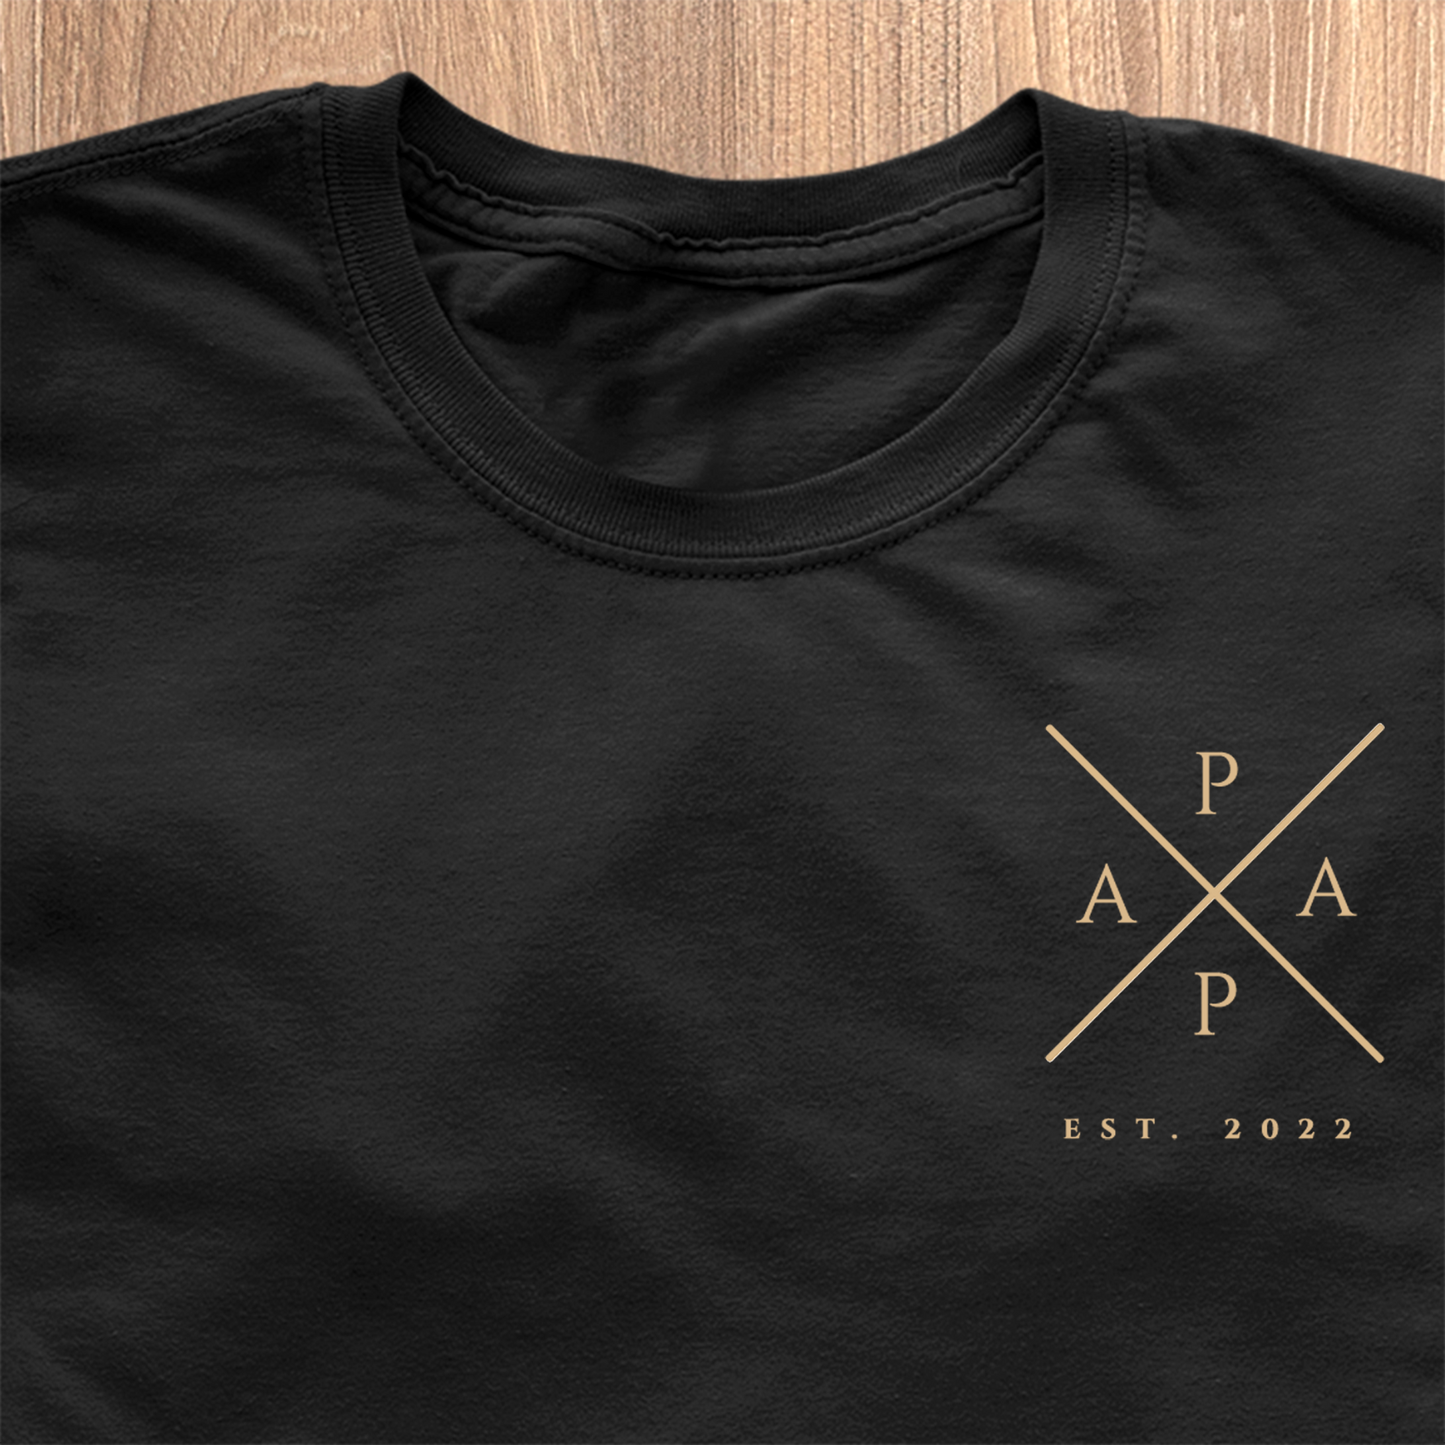 Papa Cross T-Shirt - Date Personnalisée